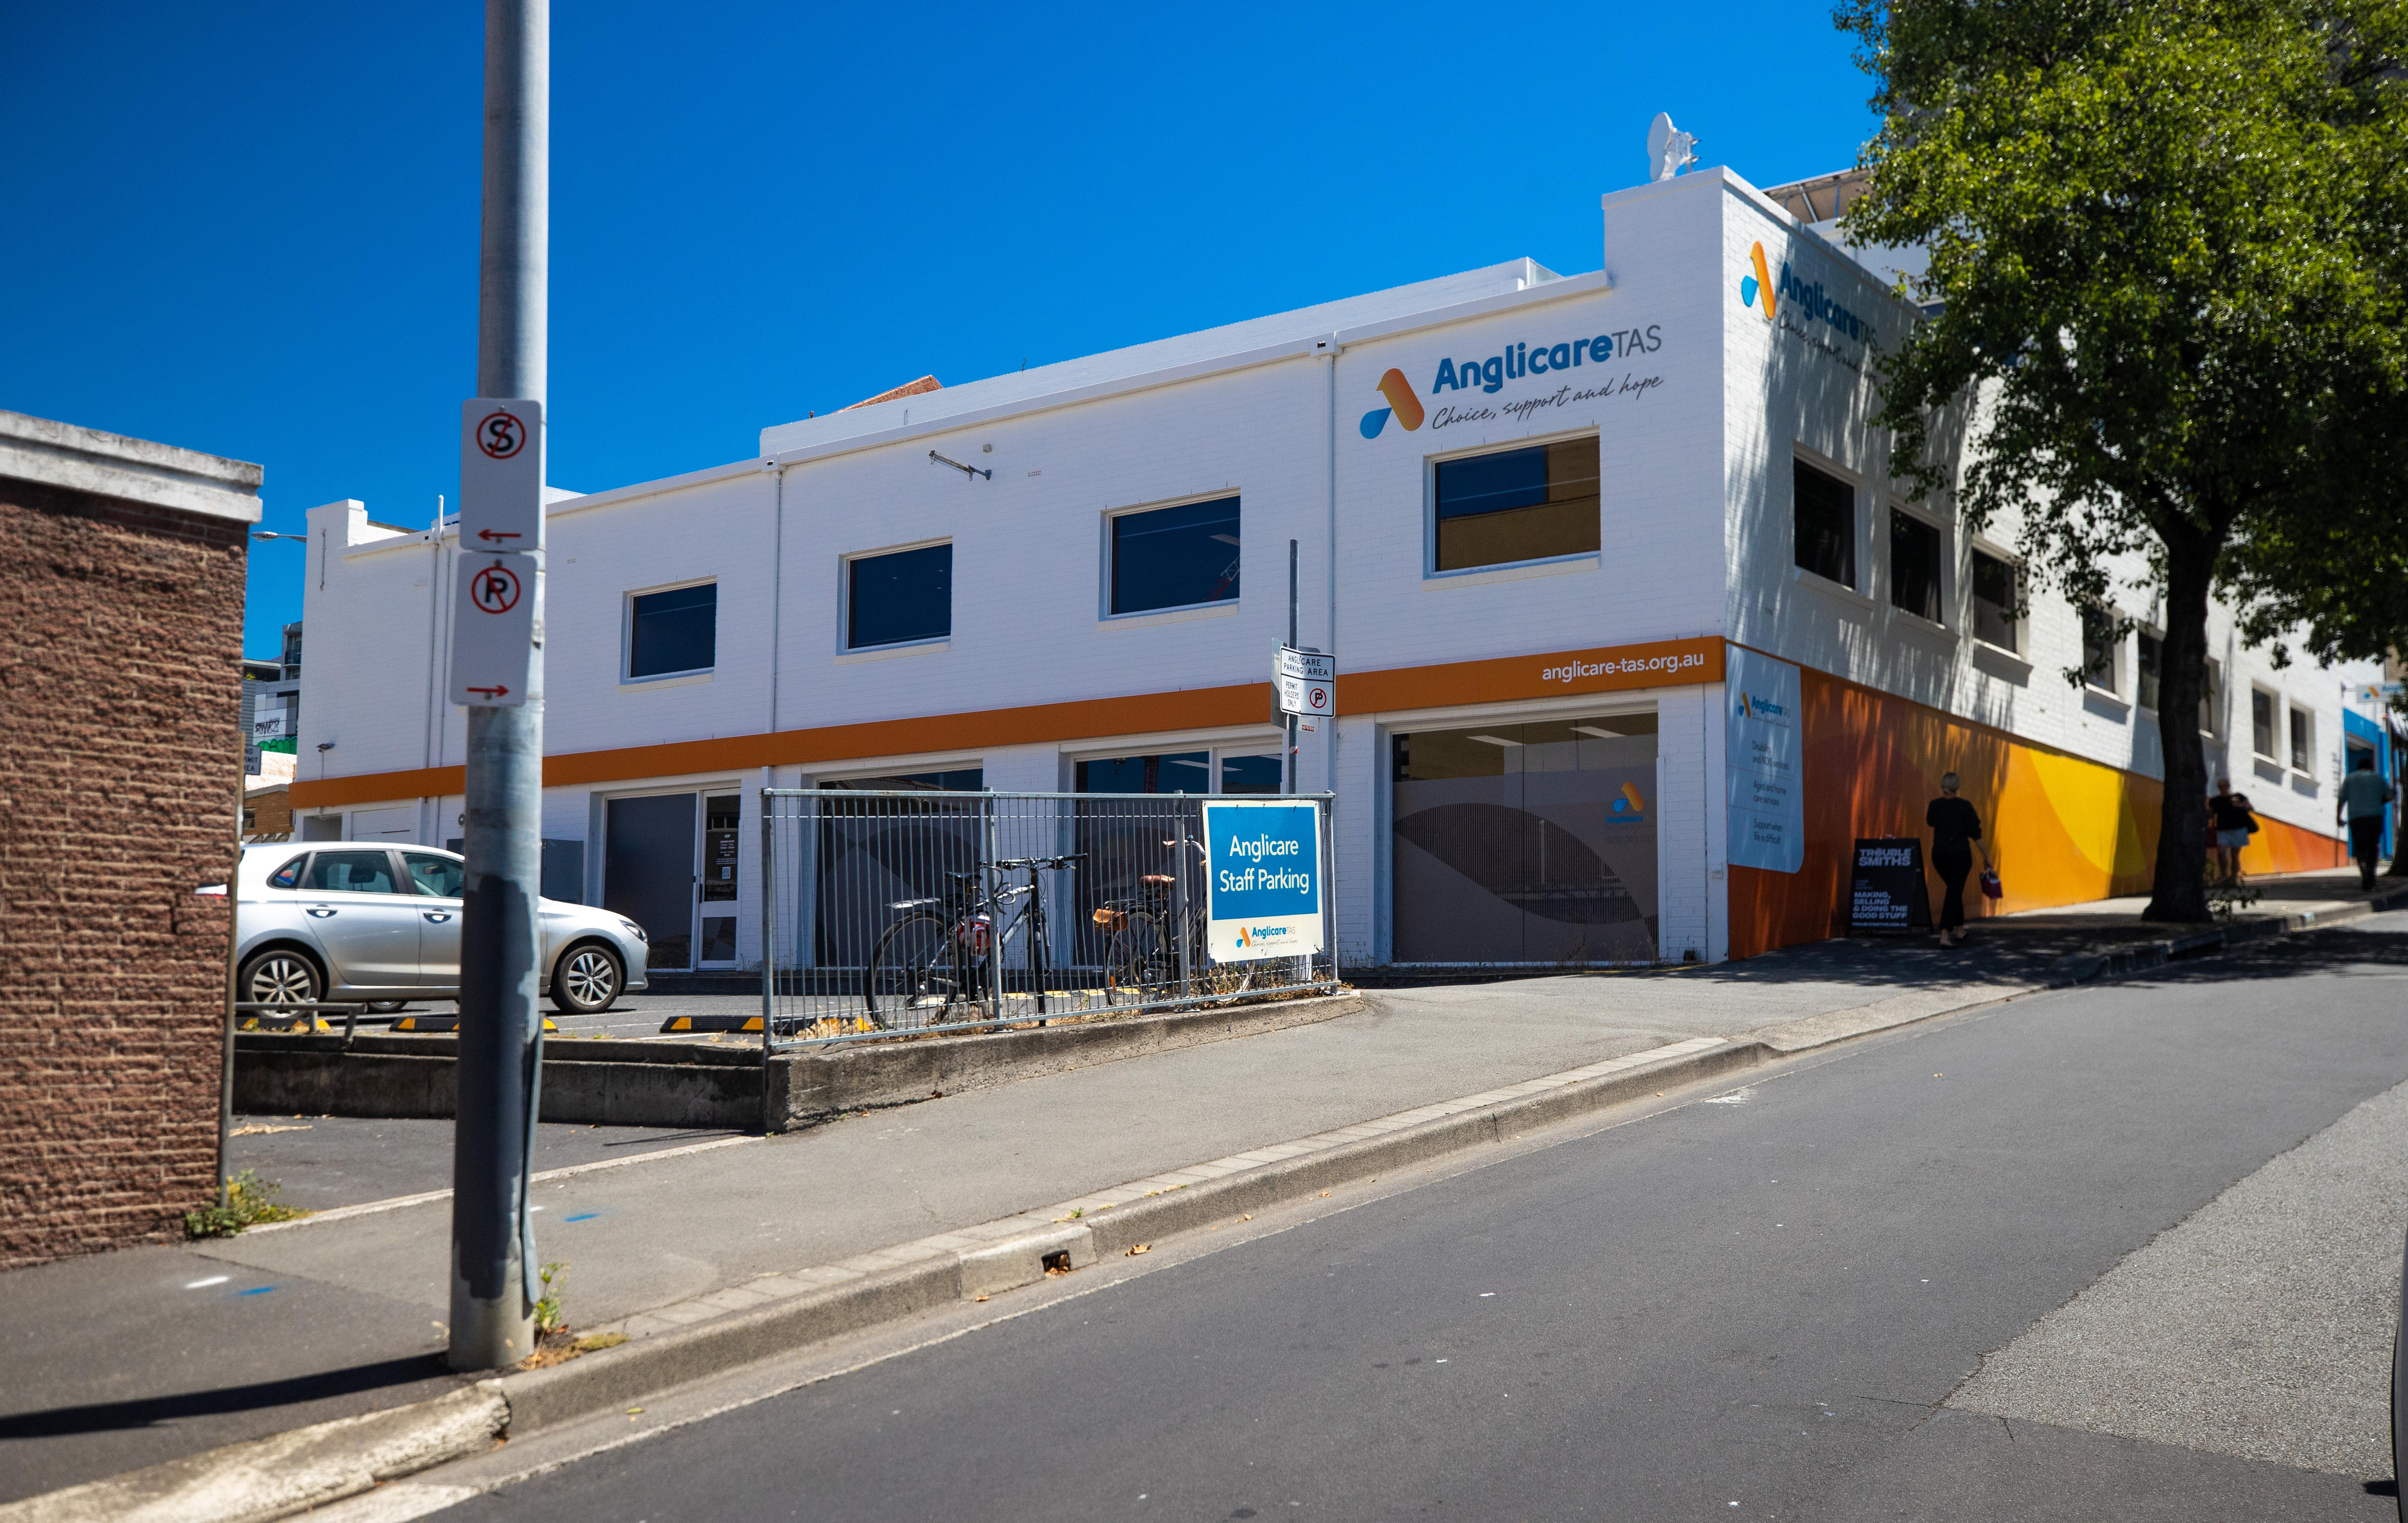 在晴朗的日子里，可以看到 Anglicare Tasmania 的建筑紧挨着街道。